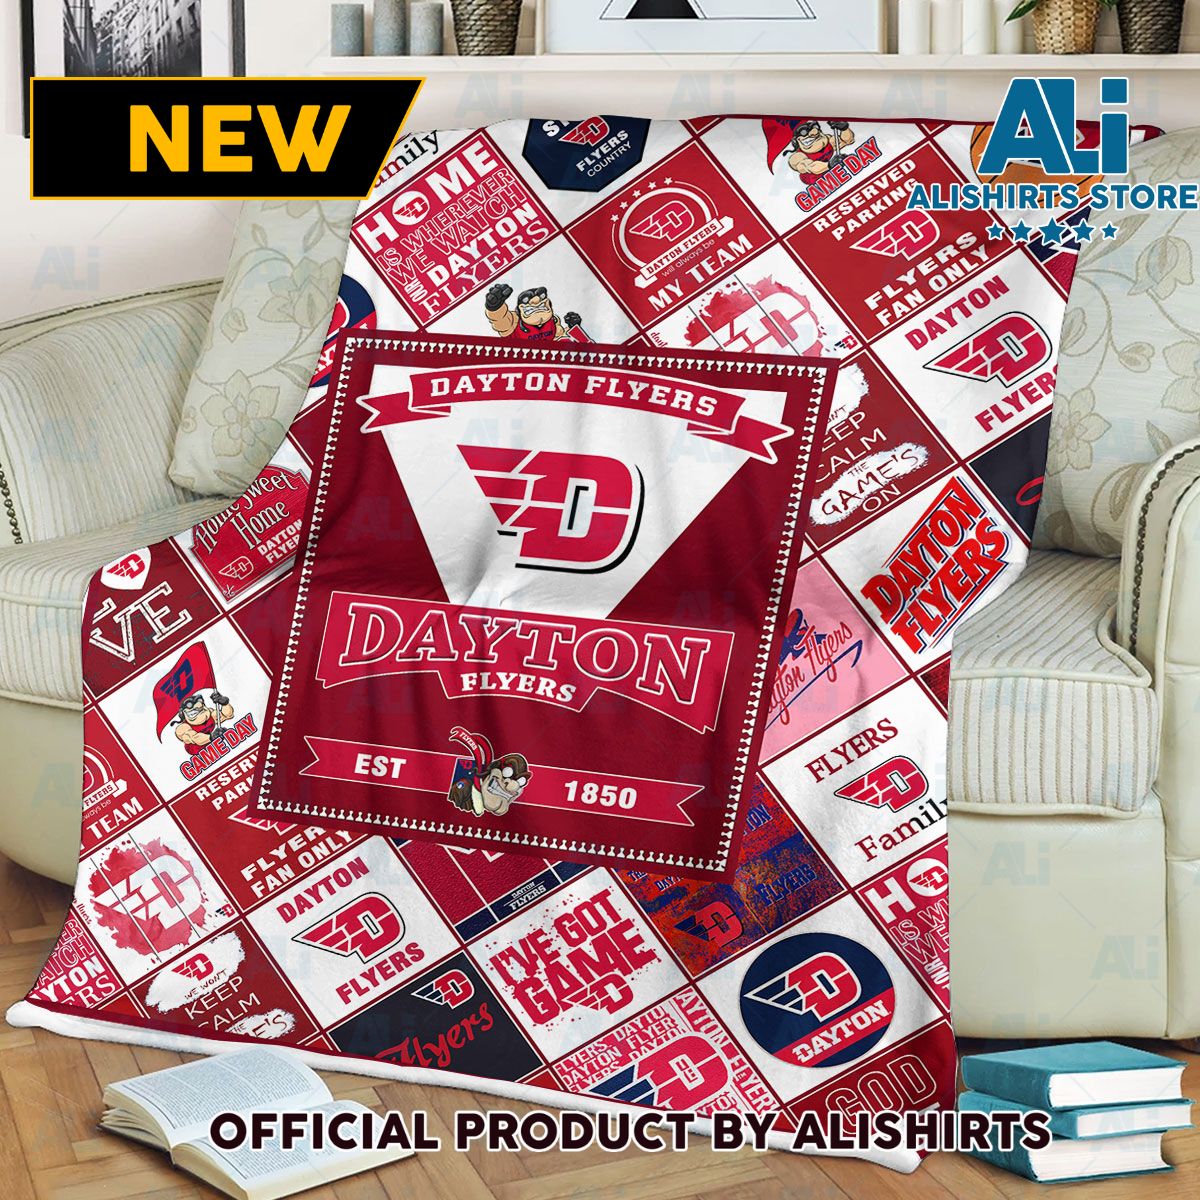 Dayton Flyers Fleece Blanket